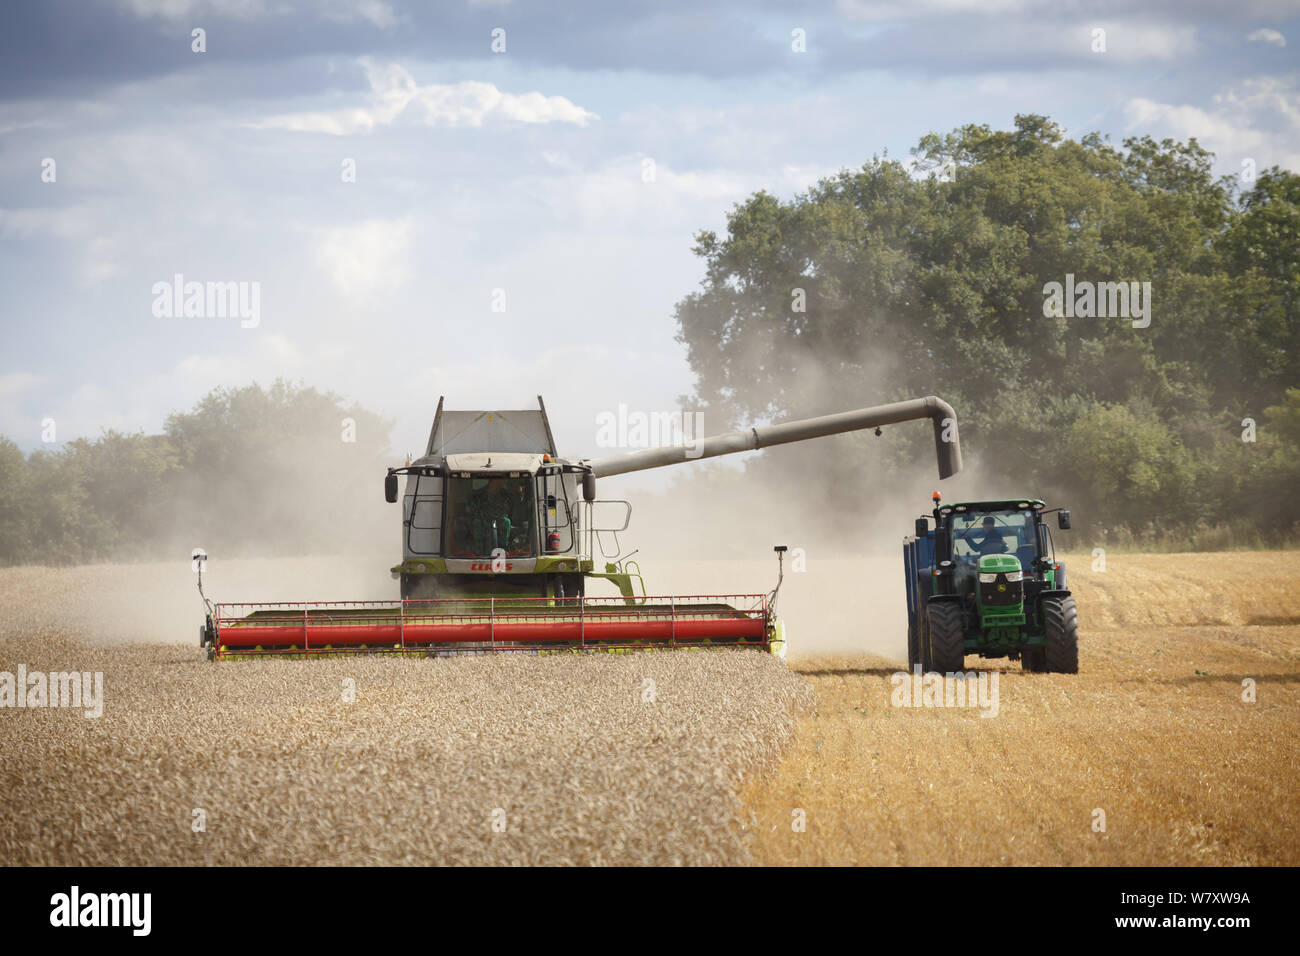 Buckingham, Royaume-Uni - 19 août 2014. Moissonneuse-batteuse et le tracteur dans un champ de blé de la récolte dans la campagne anglaise Banque D'Images